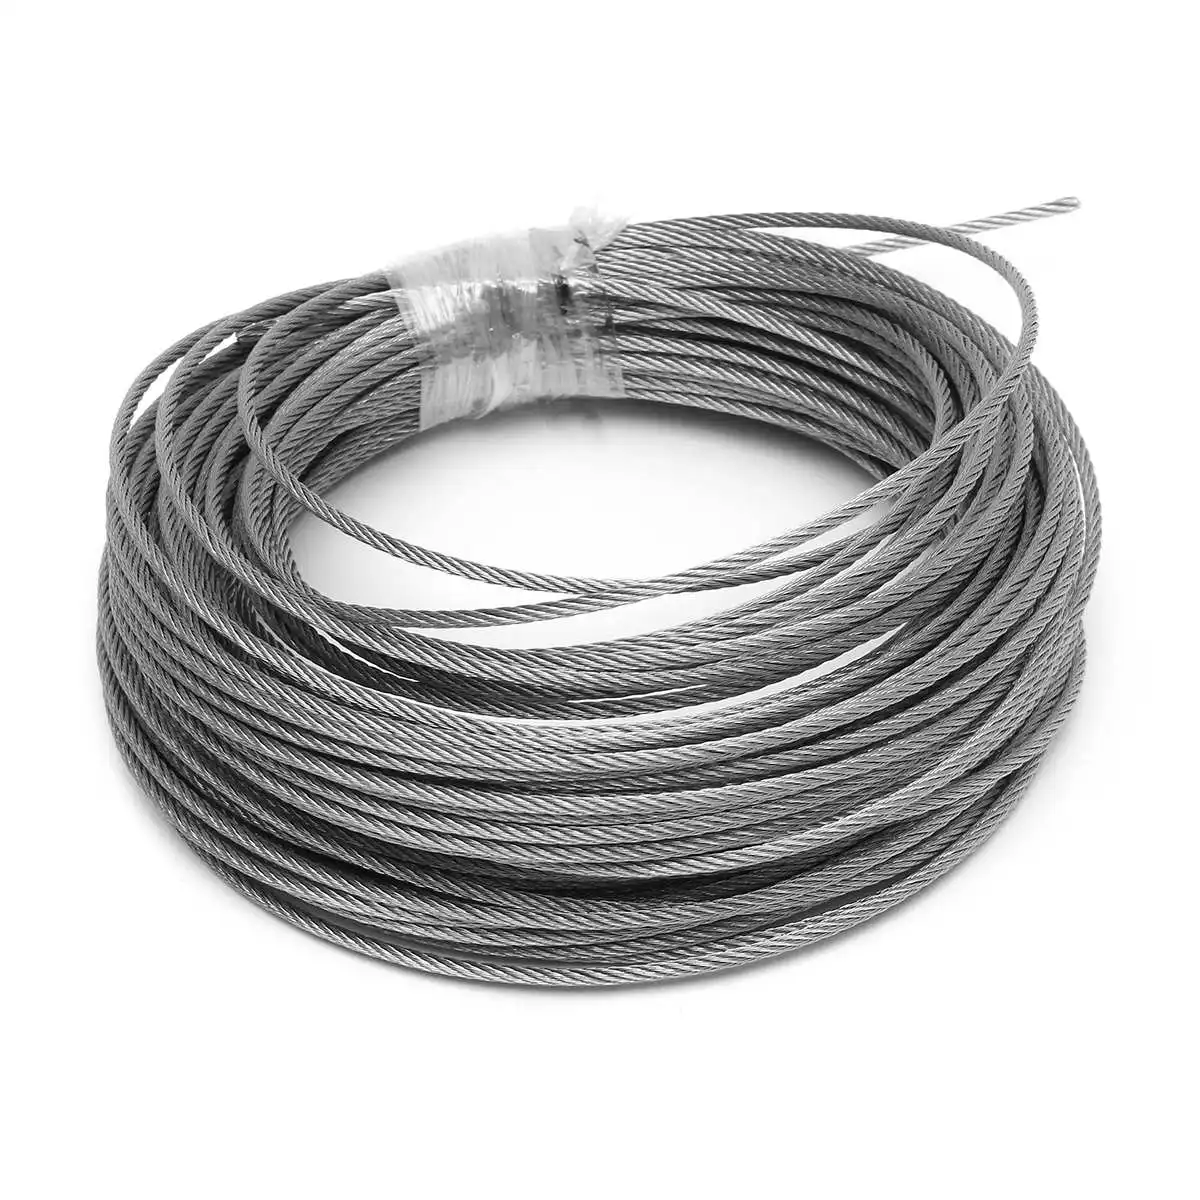 1,5 мм Проволока из нержавеющей стали Веревка рыболовные подъемный кабель бельевой растяжение Диаметр 1,5 мм Структура кабель